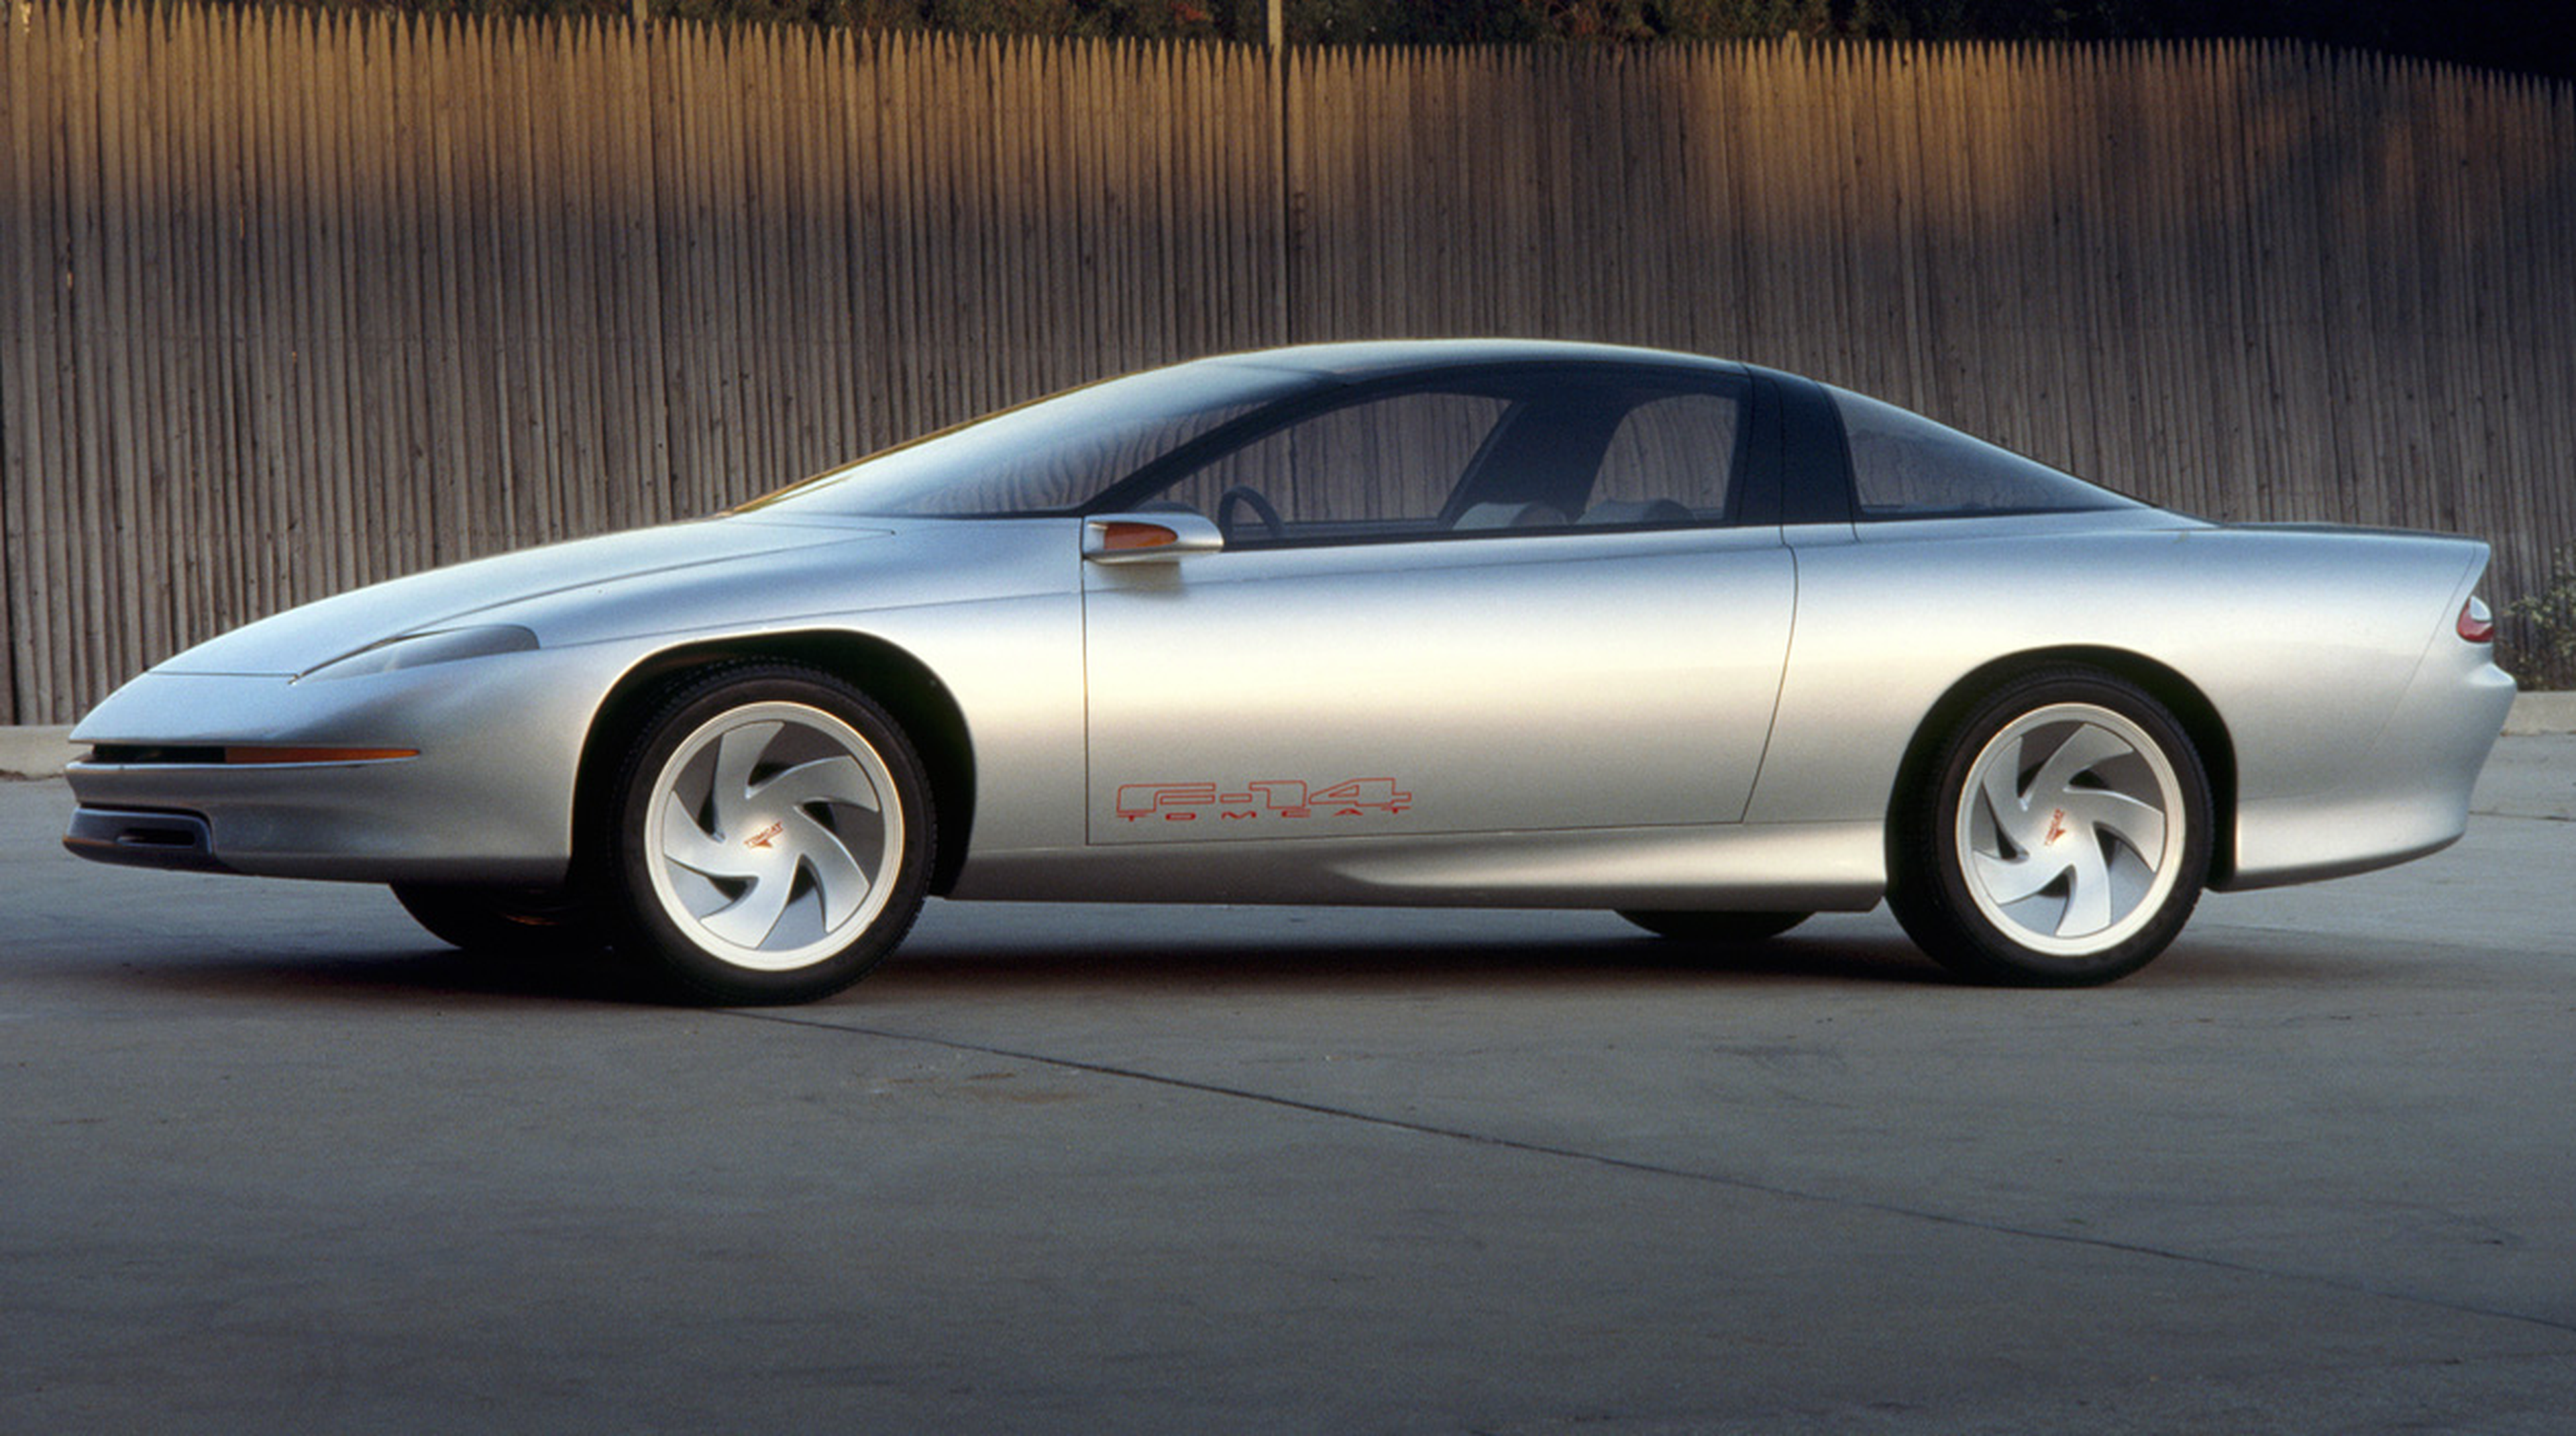 Vídeo: 5 prototipos del Chevrolet Camaro que no conocías